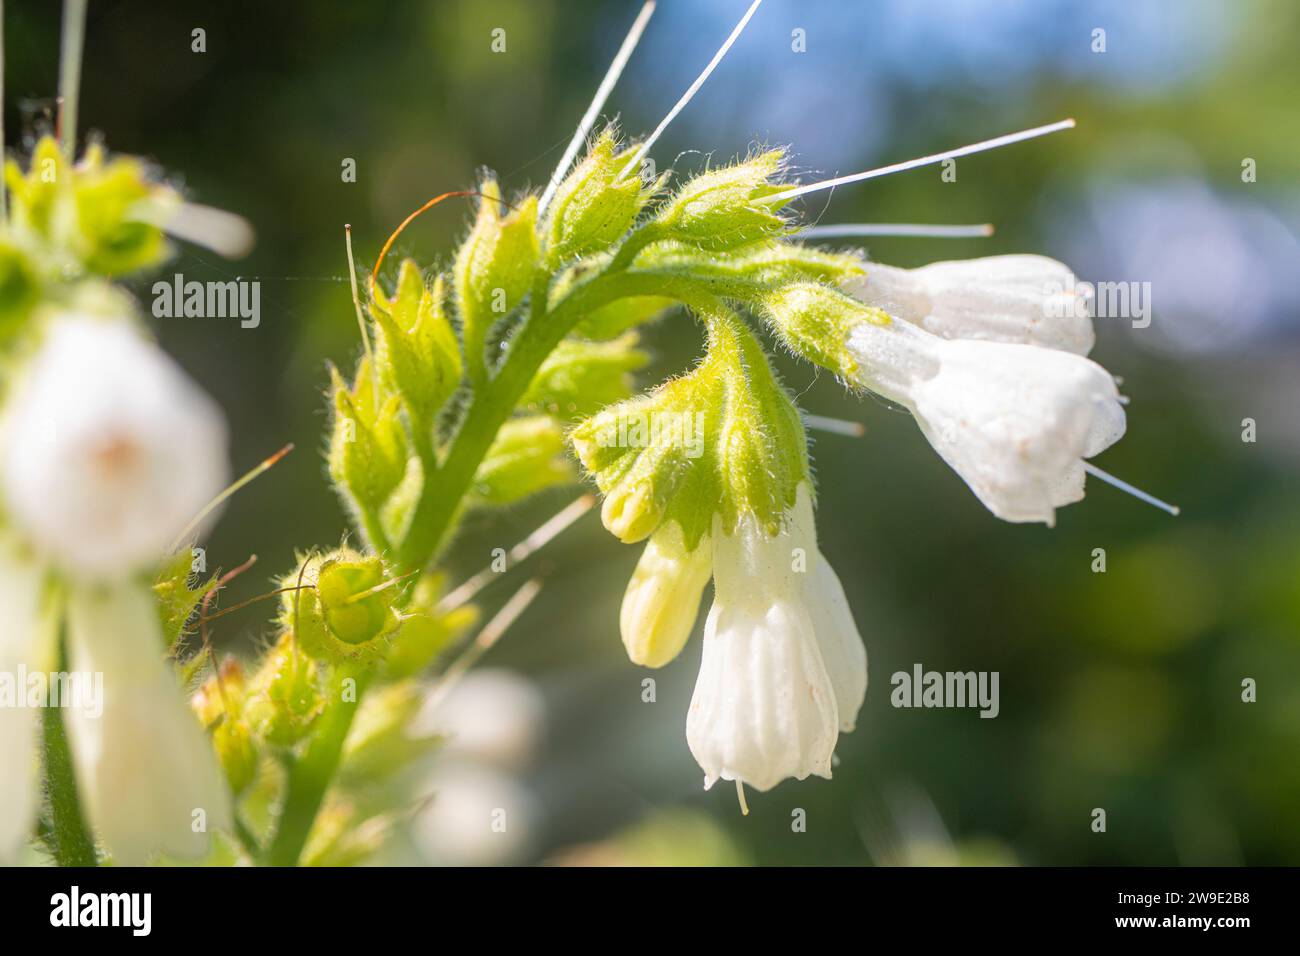 Macro close-up of a beautiful English wildflower Stock Photo